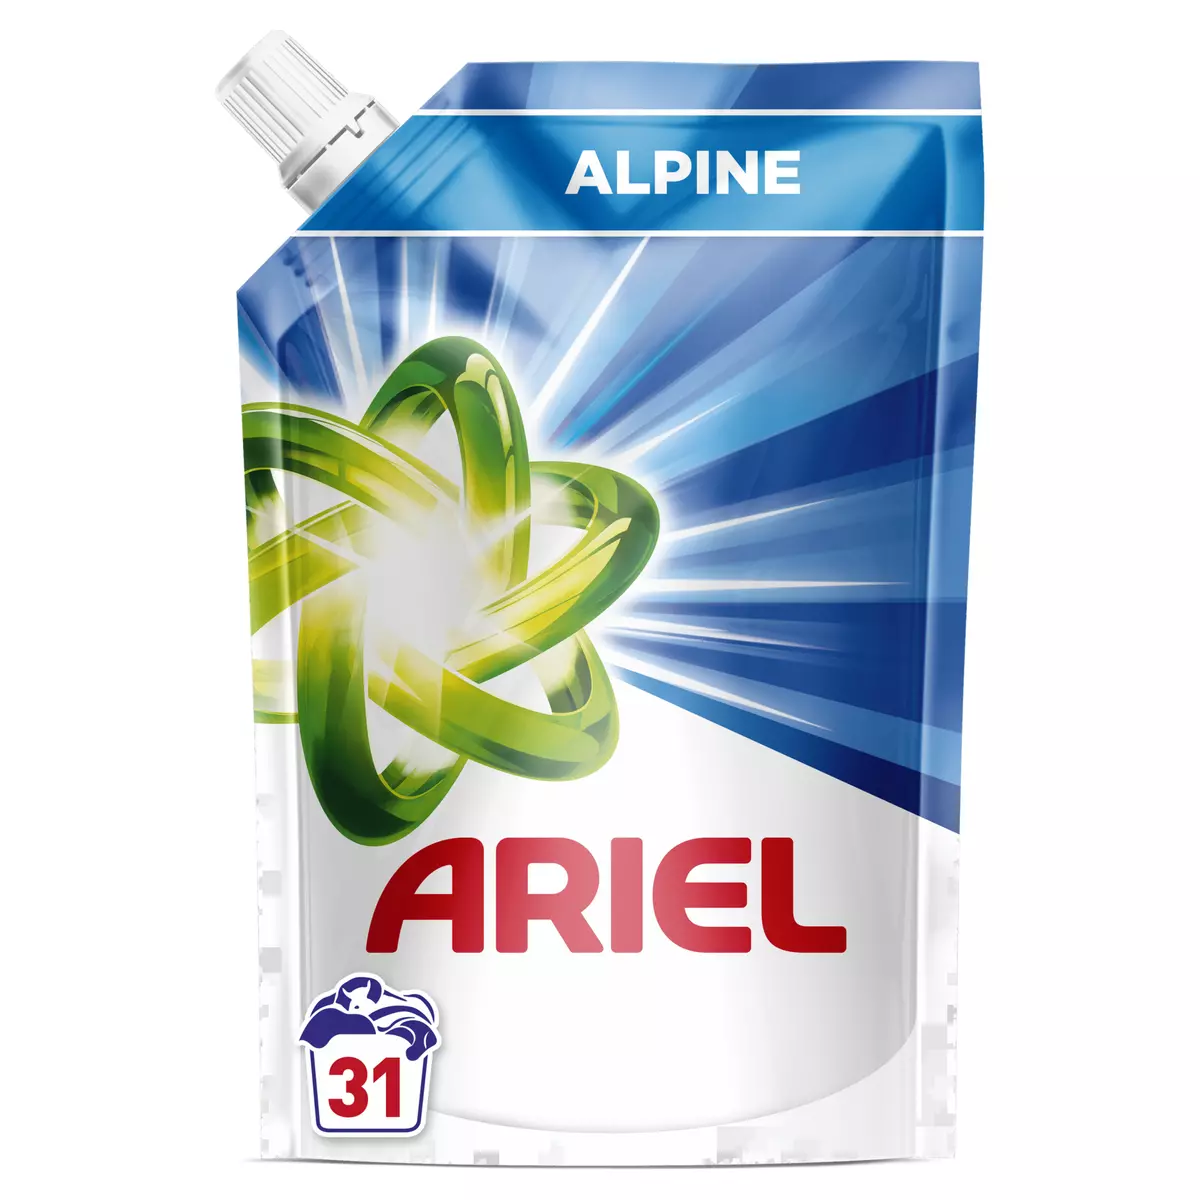 ARIEL Ecorecharge lessive alpine 31 lavages 1.55l pas cher 